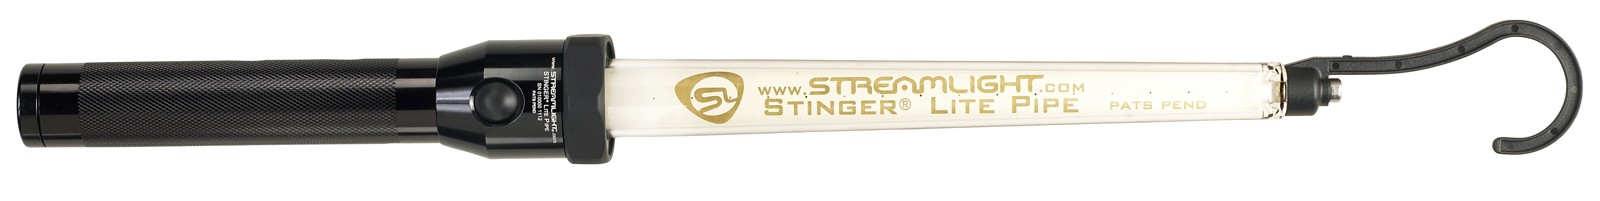 Светодиодное осветительное устройство Stinger® Lite Pipe Фото 5